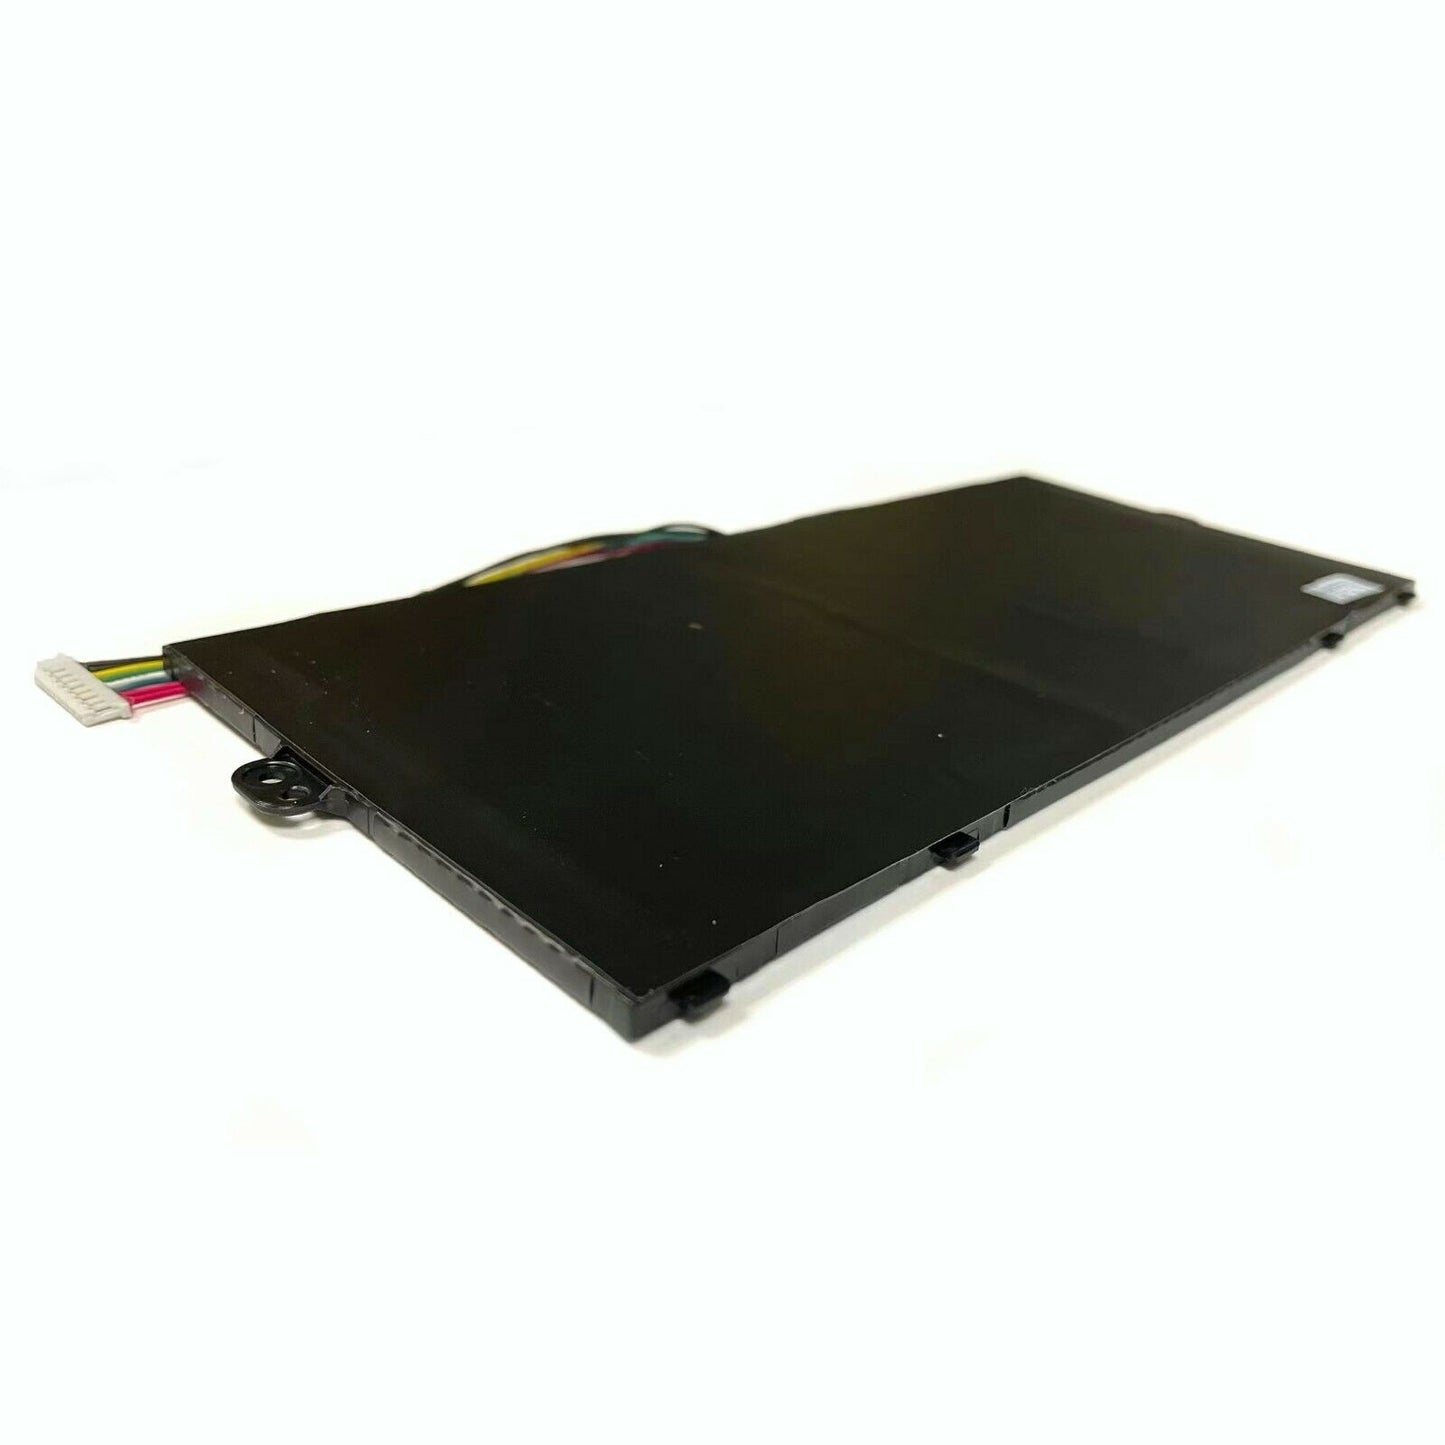 Acer AP16L5J Genuine Battery SP111-32N SF514-52T SF514-52TP SF514-53T KT.00205.002